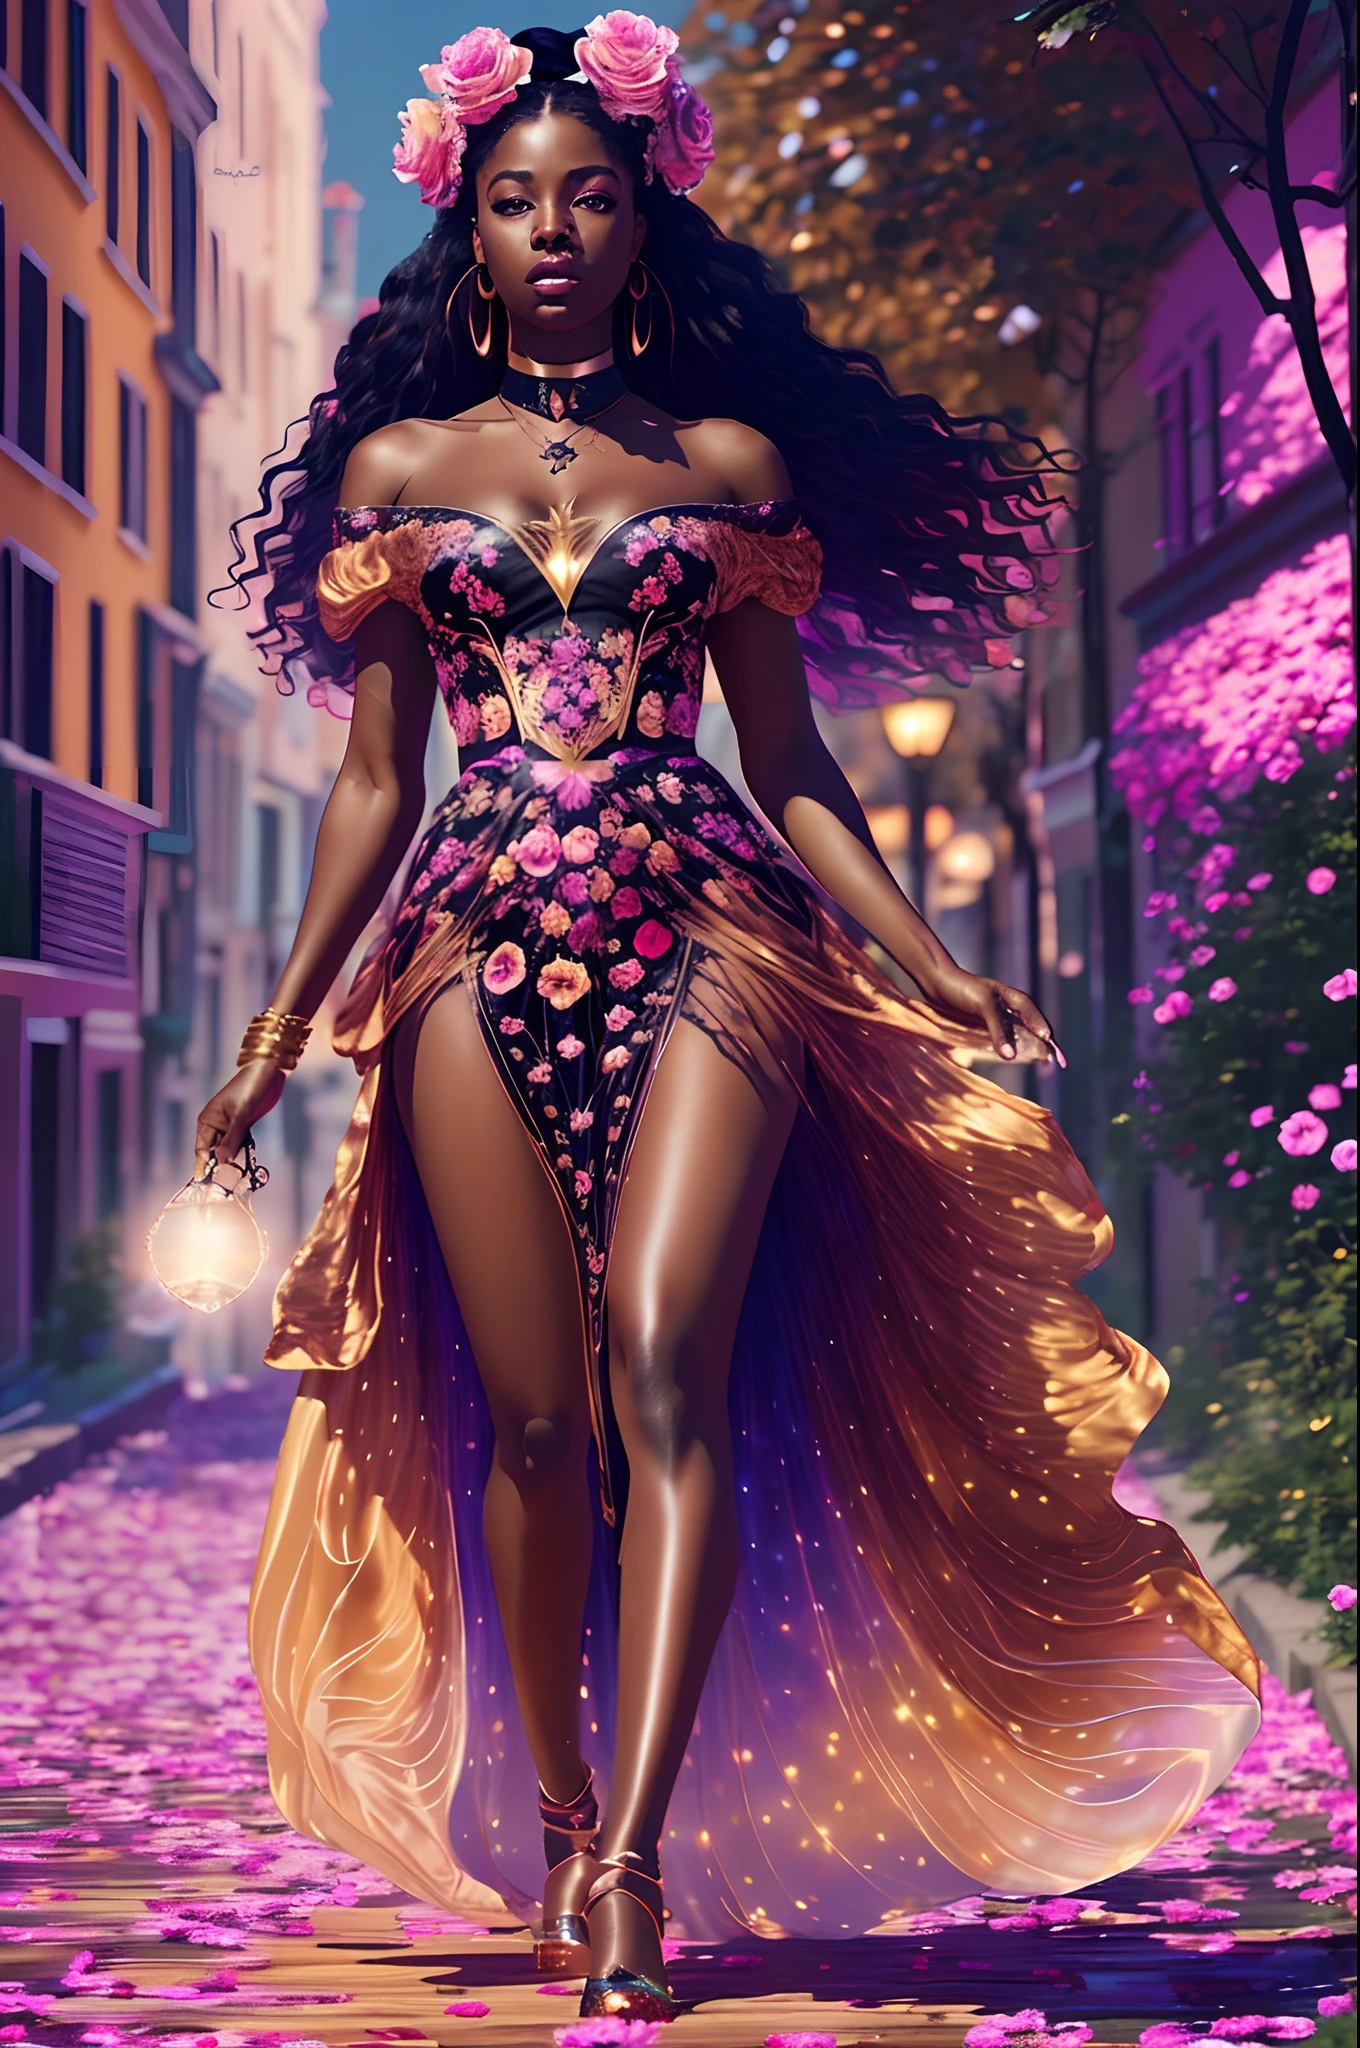 Schöne schwarze Frau in einem seidenweichen Kleid, die in einem roségoldenen Himmel spaziert, mit irisierendem Licht, hochdetaillierte Bilder, lebendige schöne Farben, fotorealistisches Bild, 32k, Ultra HD, Unreal Engine gerendert, filmische Beleuchtung, Kunst von Bella Box, artgerm style, deviantart --auto --s2